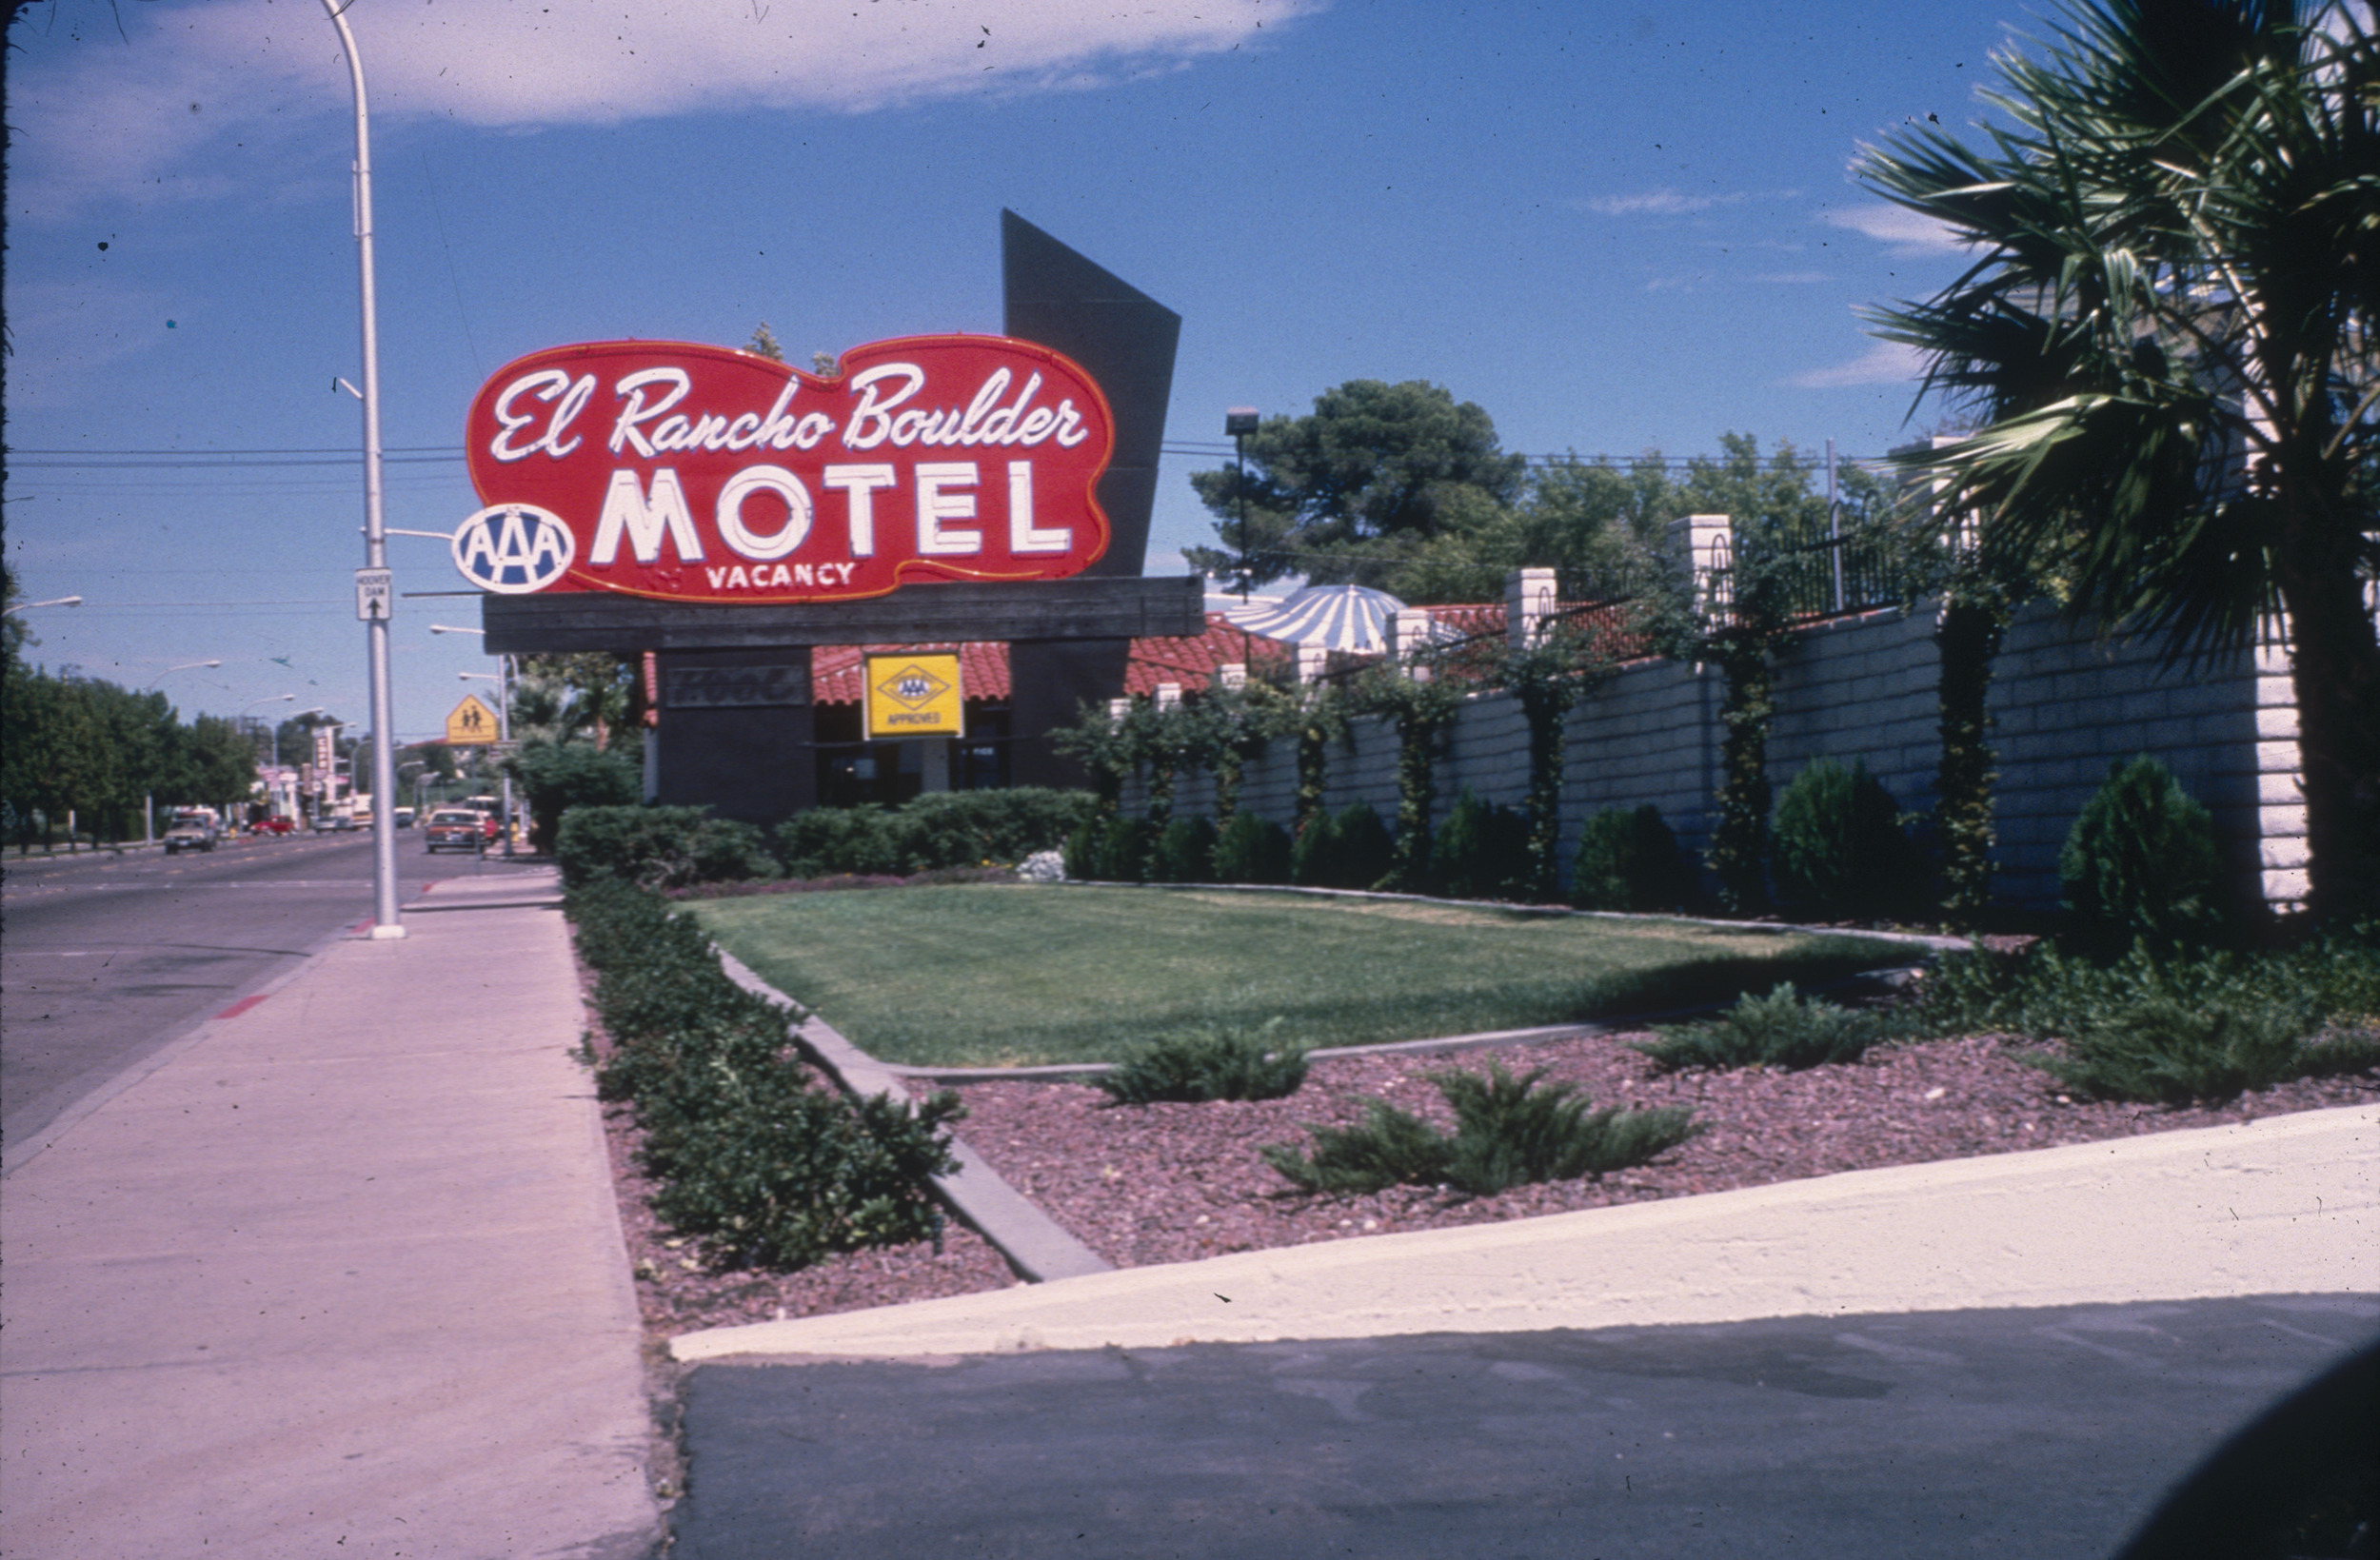 Slide of the El Rancho Boulder Motel, Boulder City, Nevada, 1986